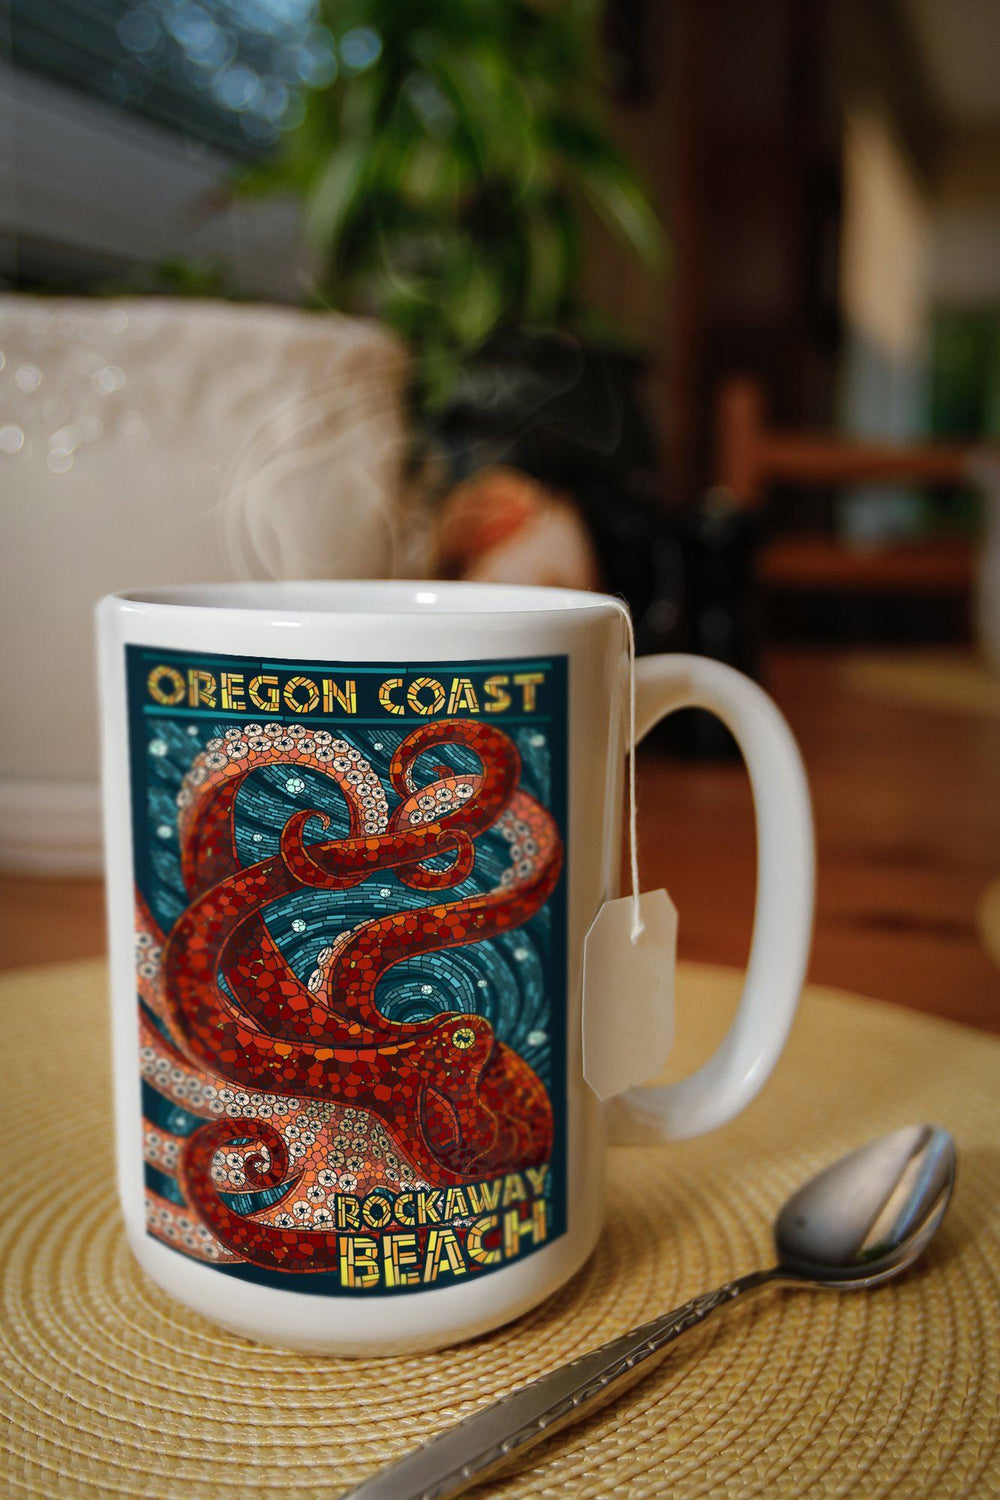 Rockaway Beach, Oregon, Mosaic Octopus, Lantern Press Poster, Ceramic Mug Mugs Lantern Press 